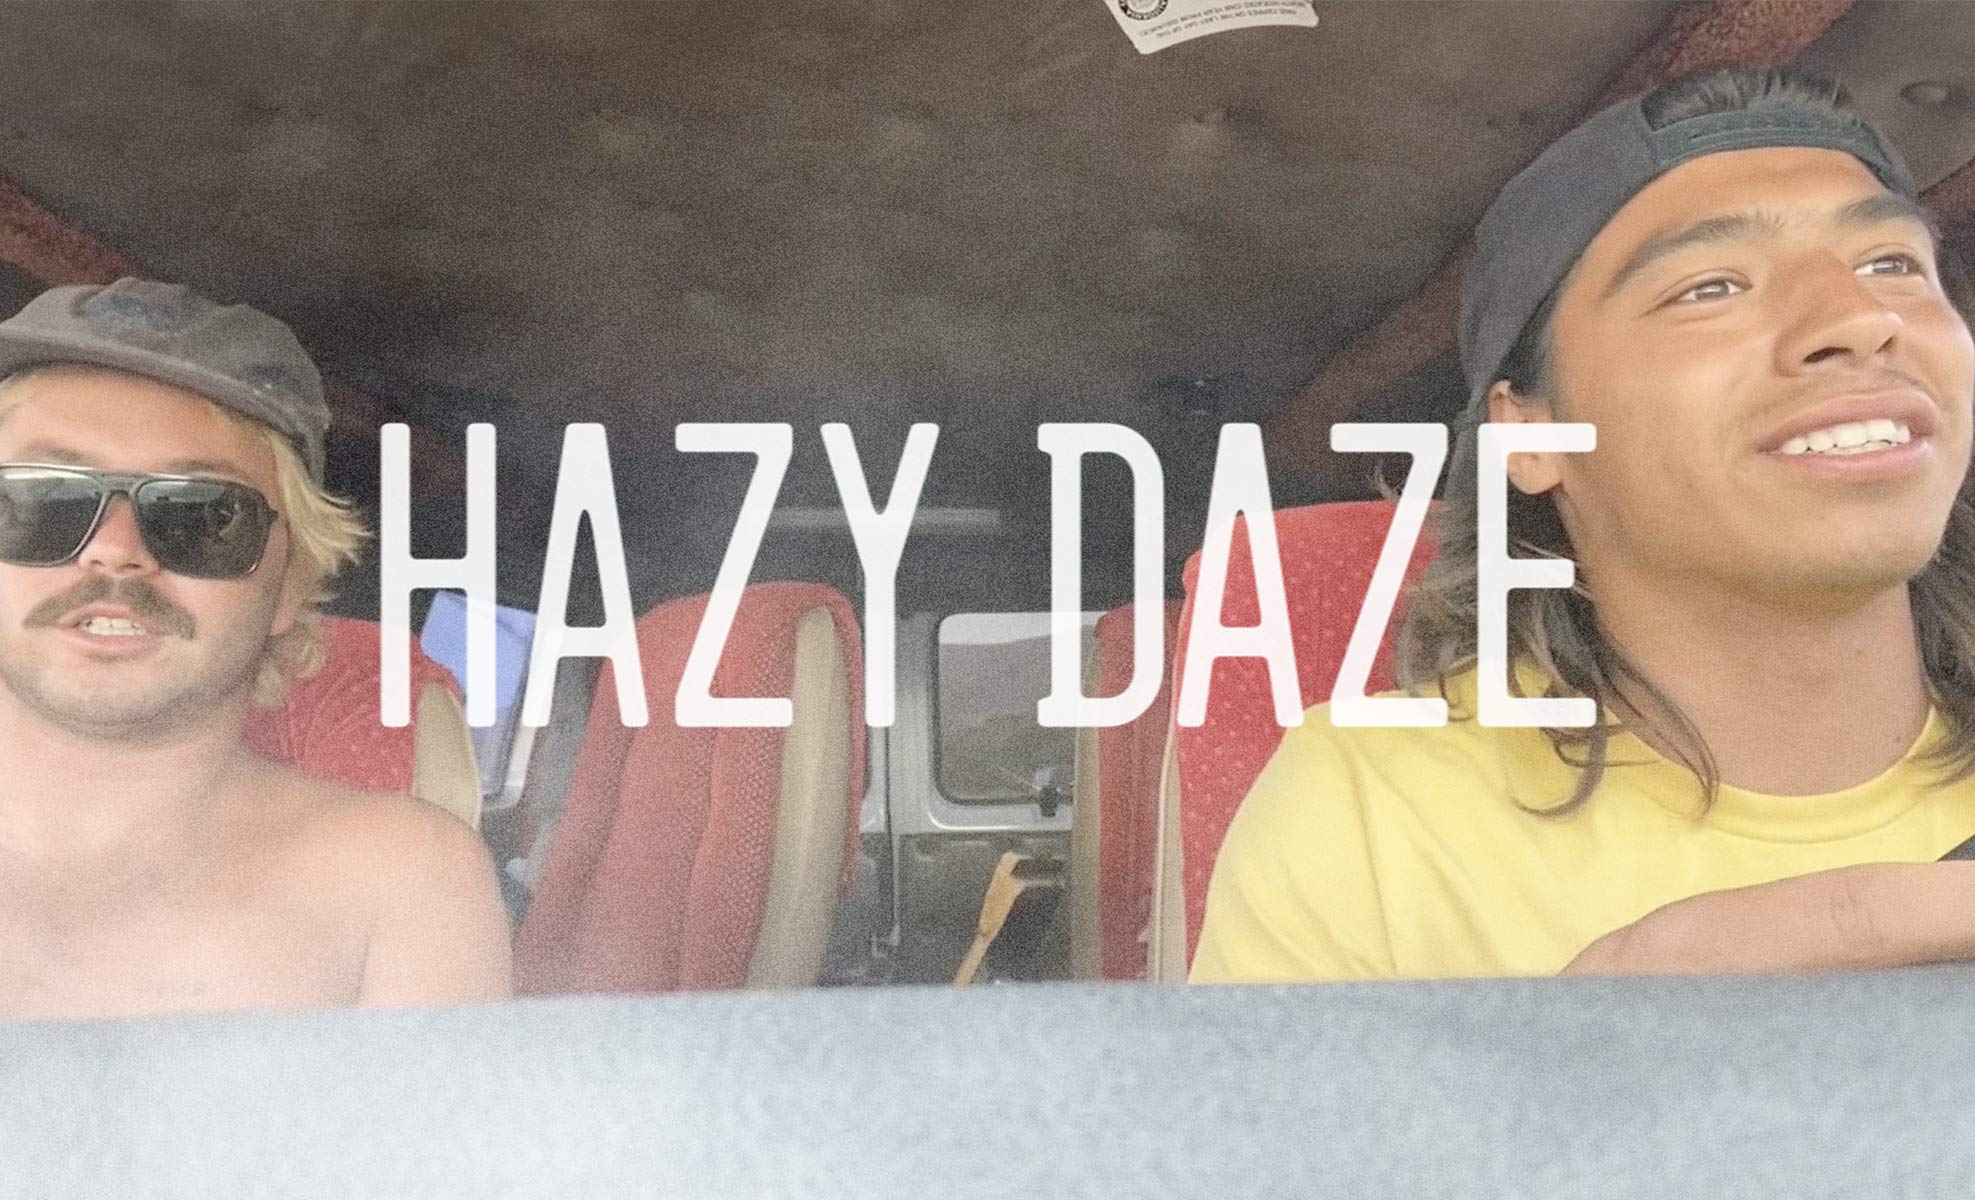 Hazy Daze Fully Video by Wiley Archbold